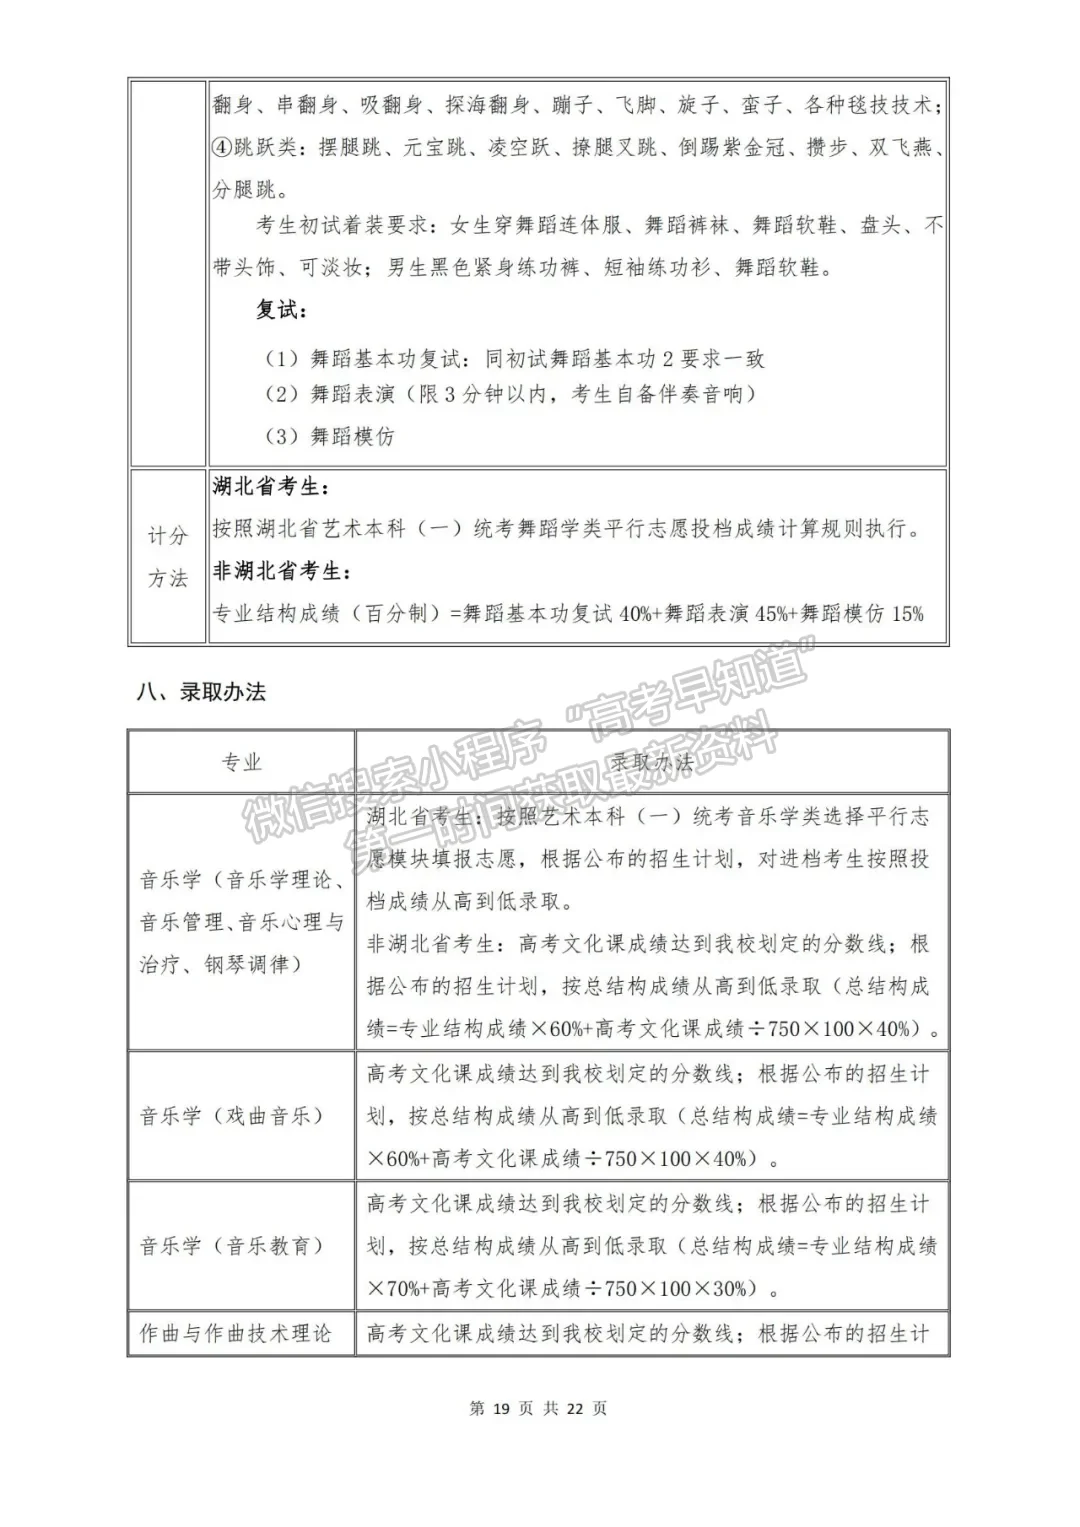 武汉音乐学院2022年普通本科招生简章